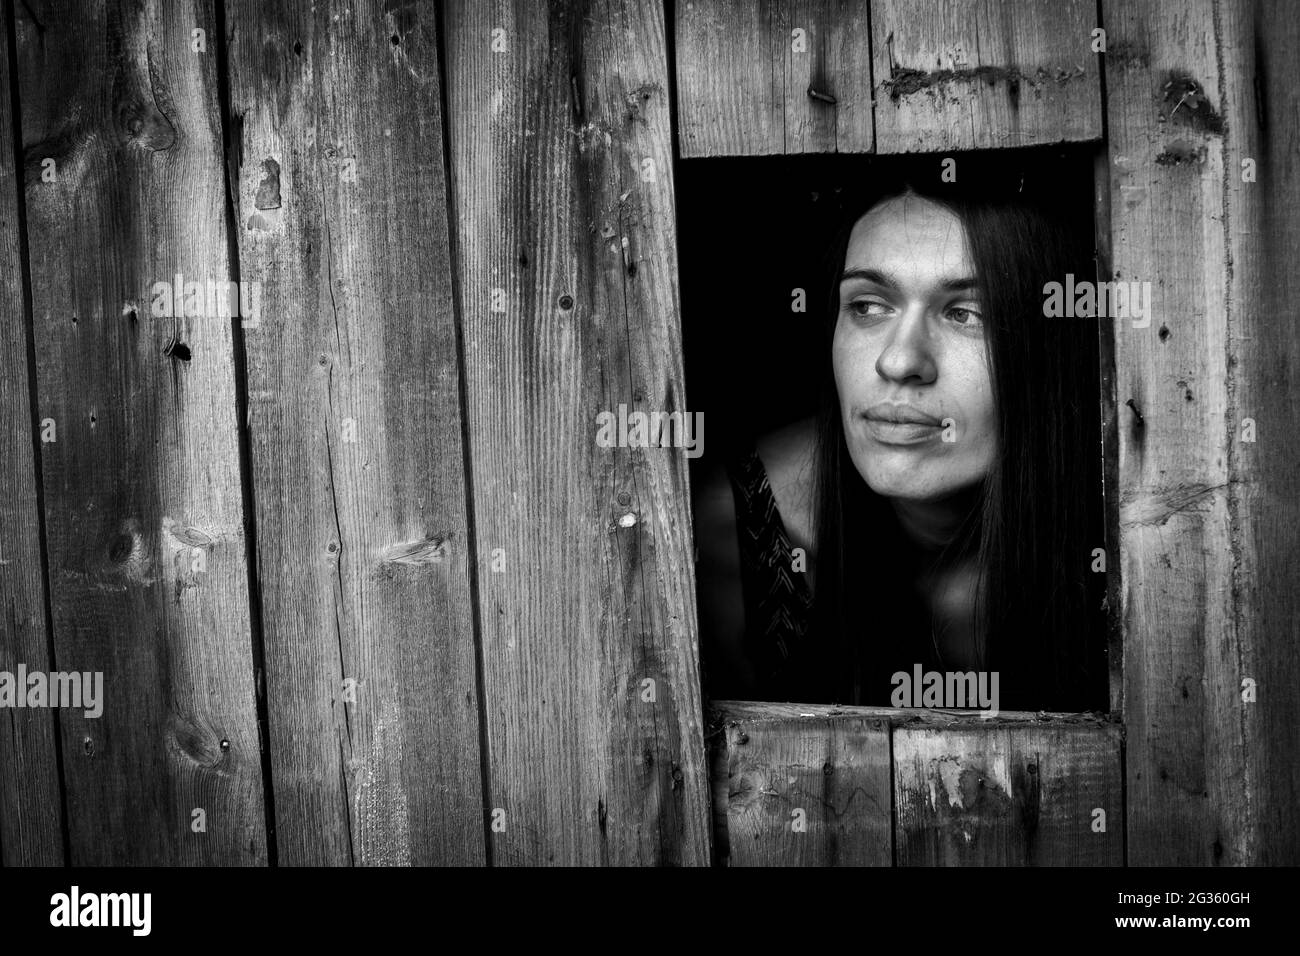 Une jeune femme dans un bâtiment en bois ща fenêtre. Photo en noir et blanc. Banque D'Images